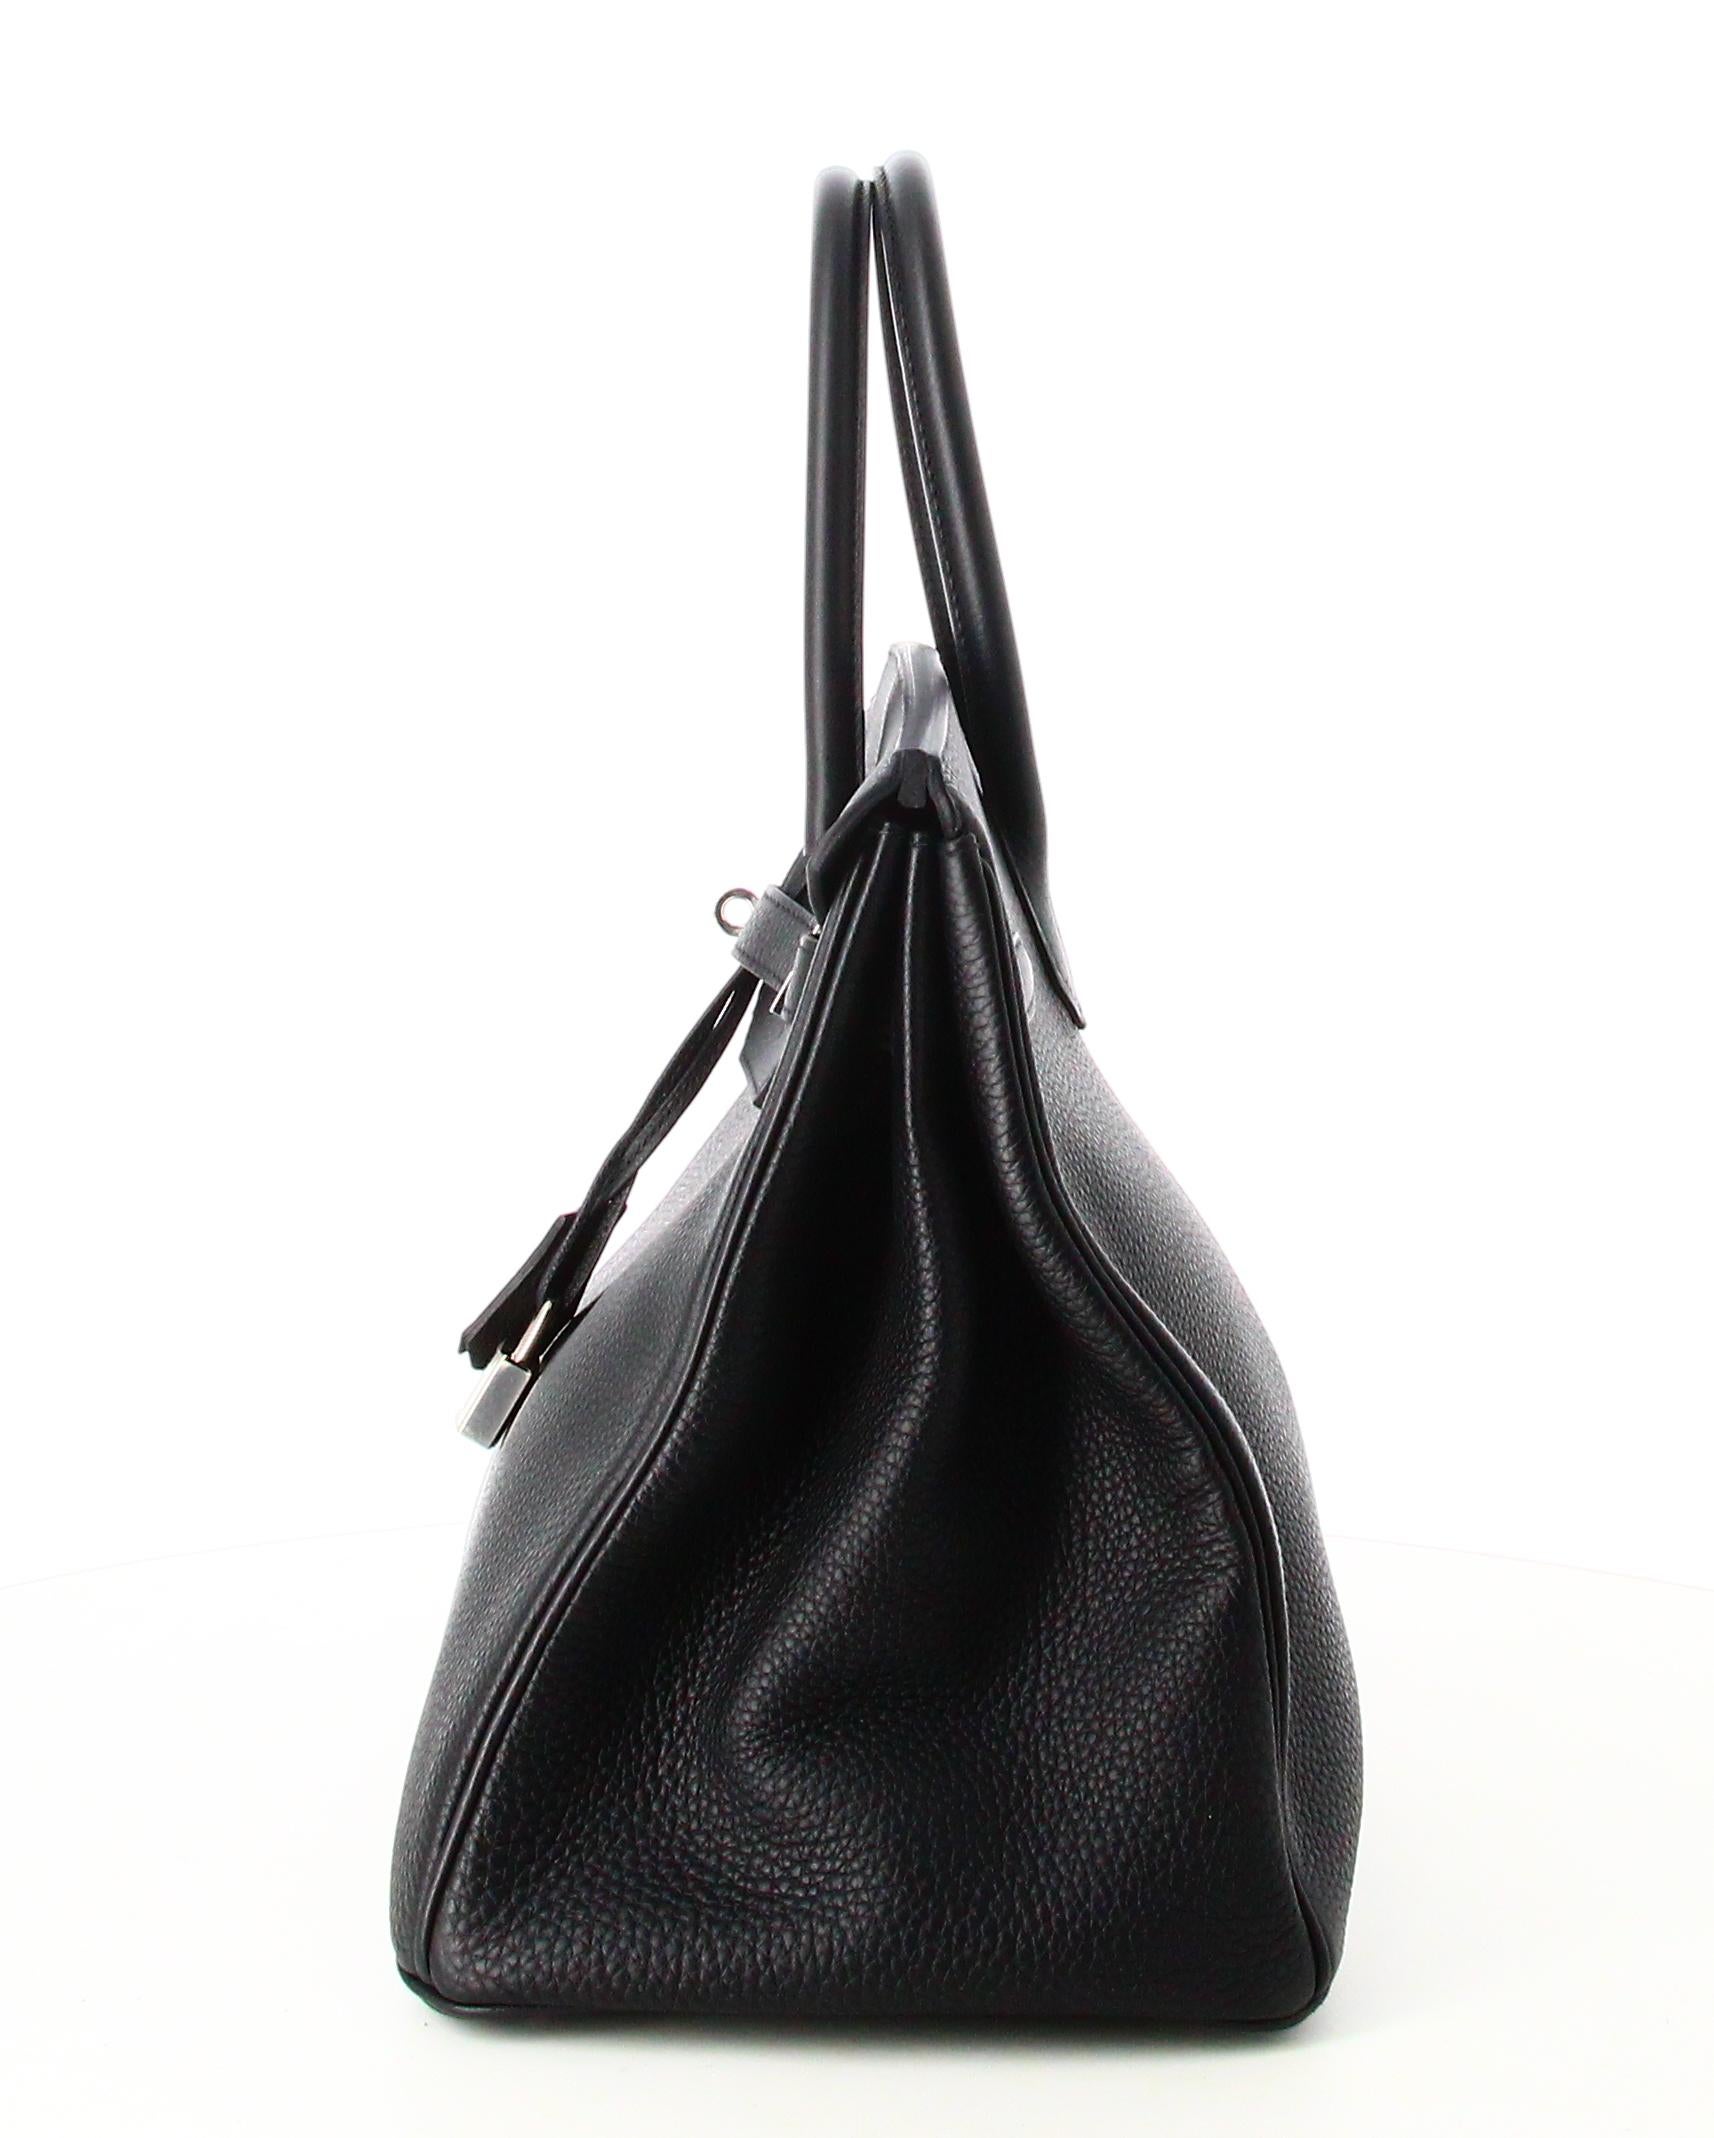 Hermes Black Leather Togo Birkin Bag 35 1